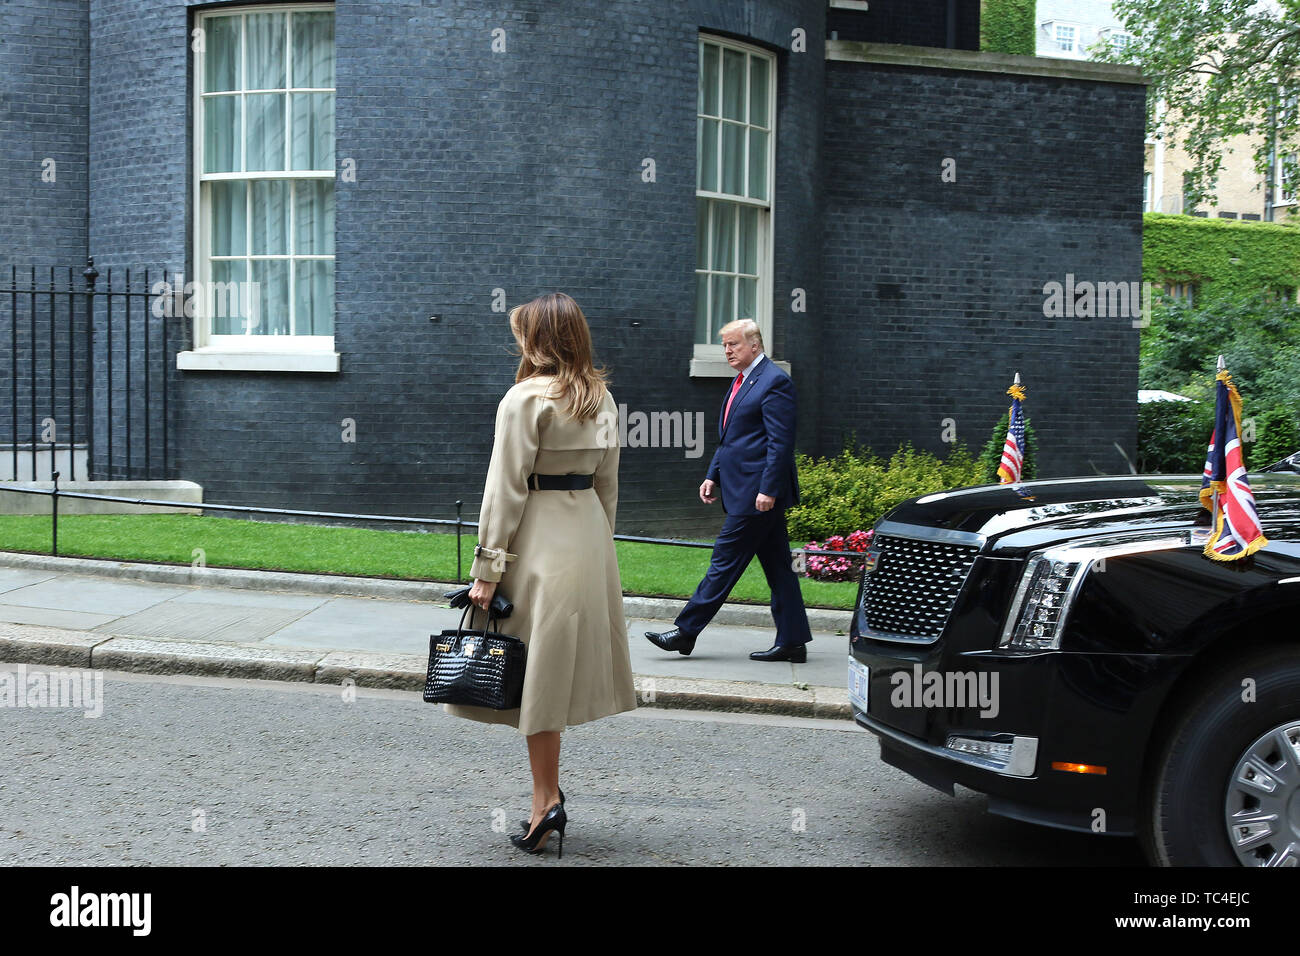 Donald Trump e Melania Trump, Stati Uniti d'America visita presidenziale per il Regno Unito, Downing Street, Londra, Regno Unito, 04 giugno 2019, Foto di Foto Stock